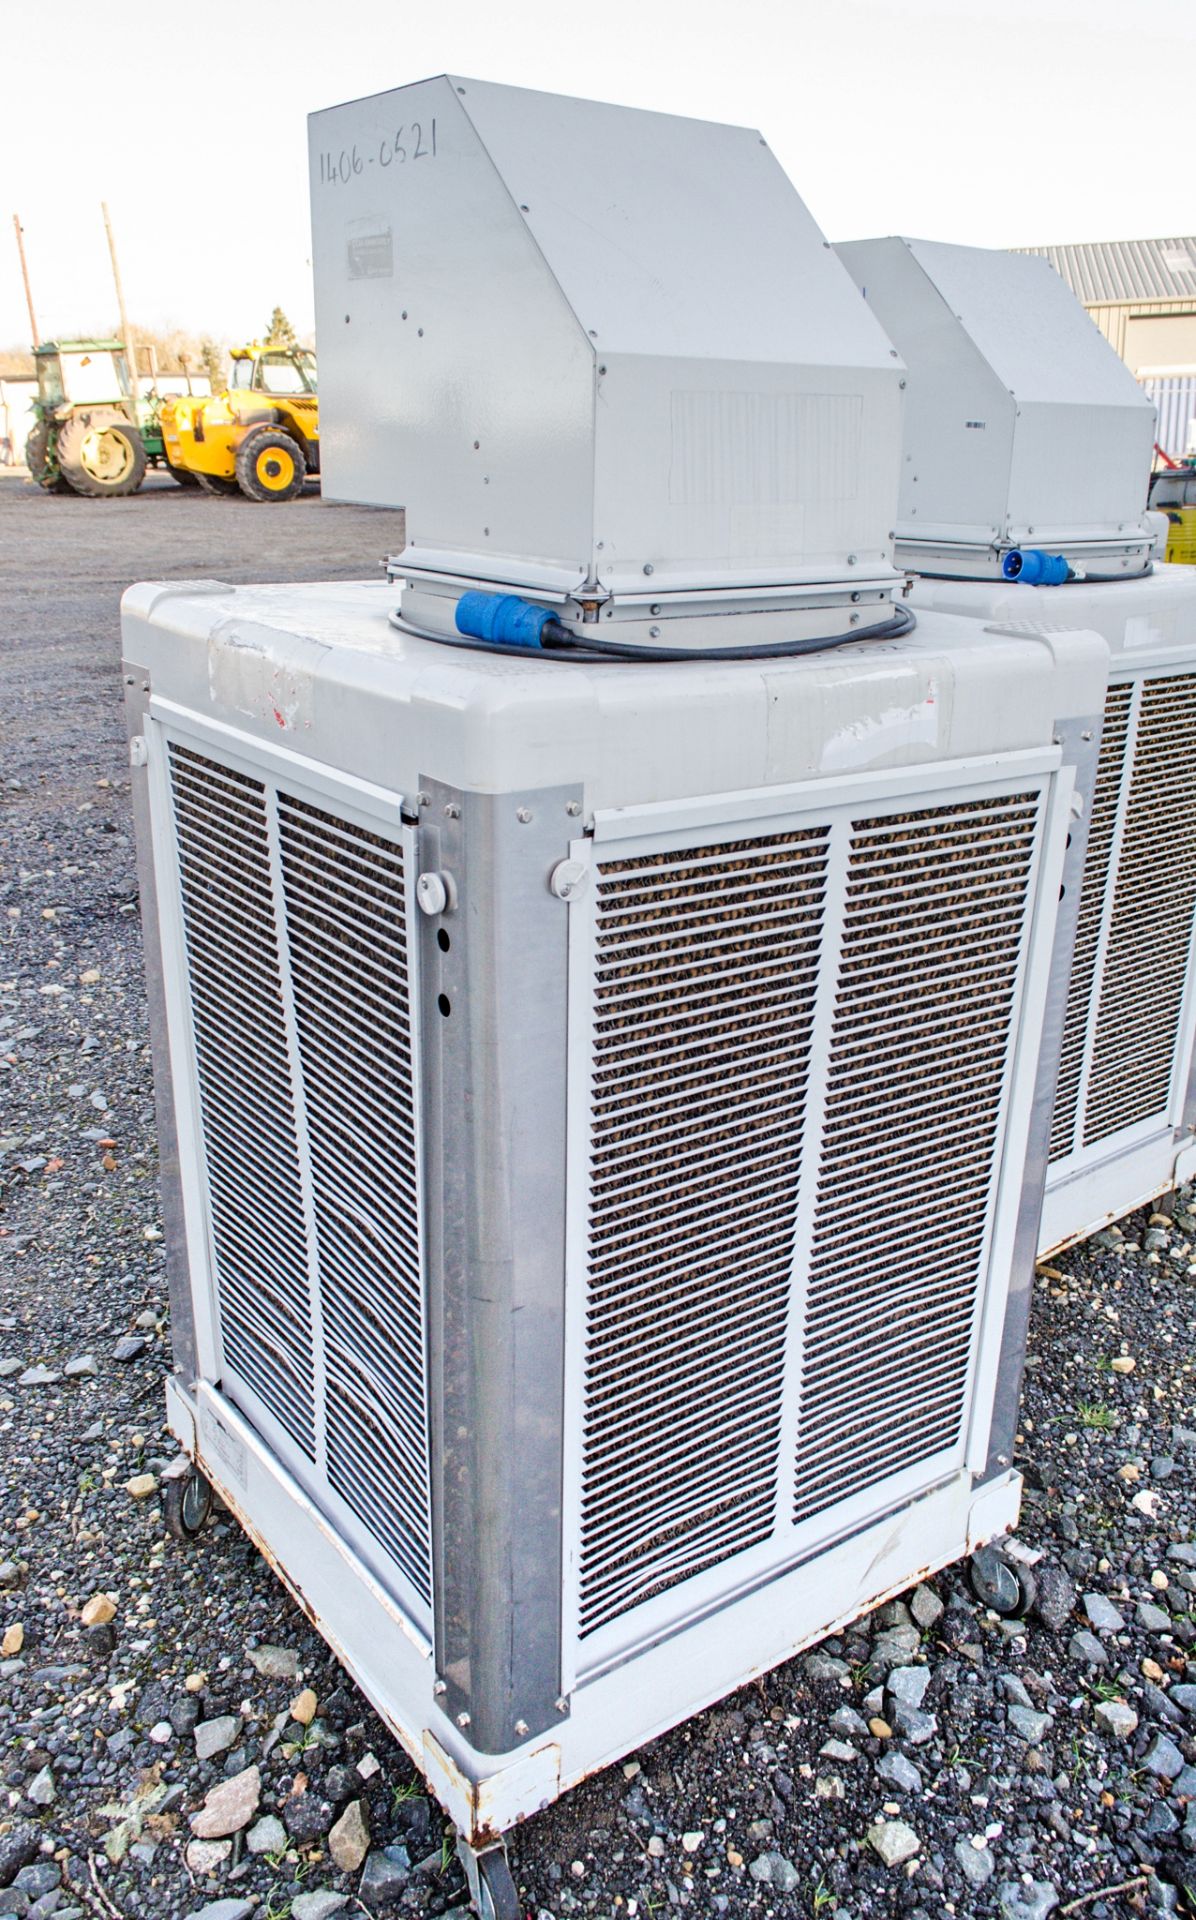 SP-EC05 240v evaporative cooler - Image 2 of 2